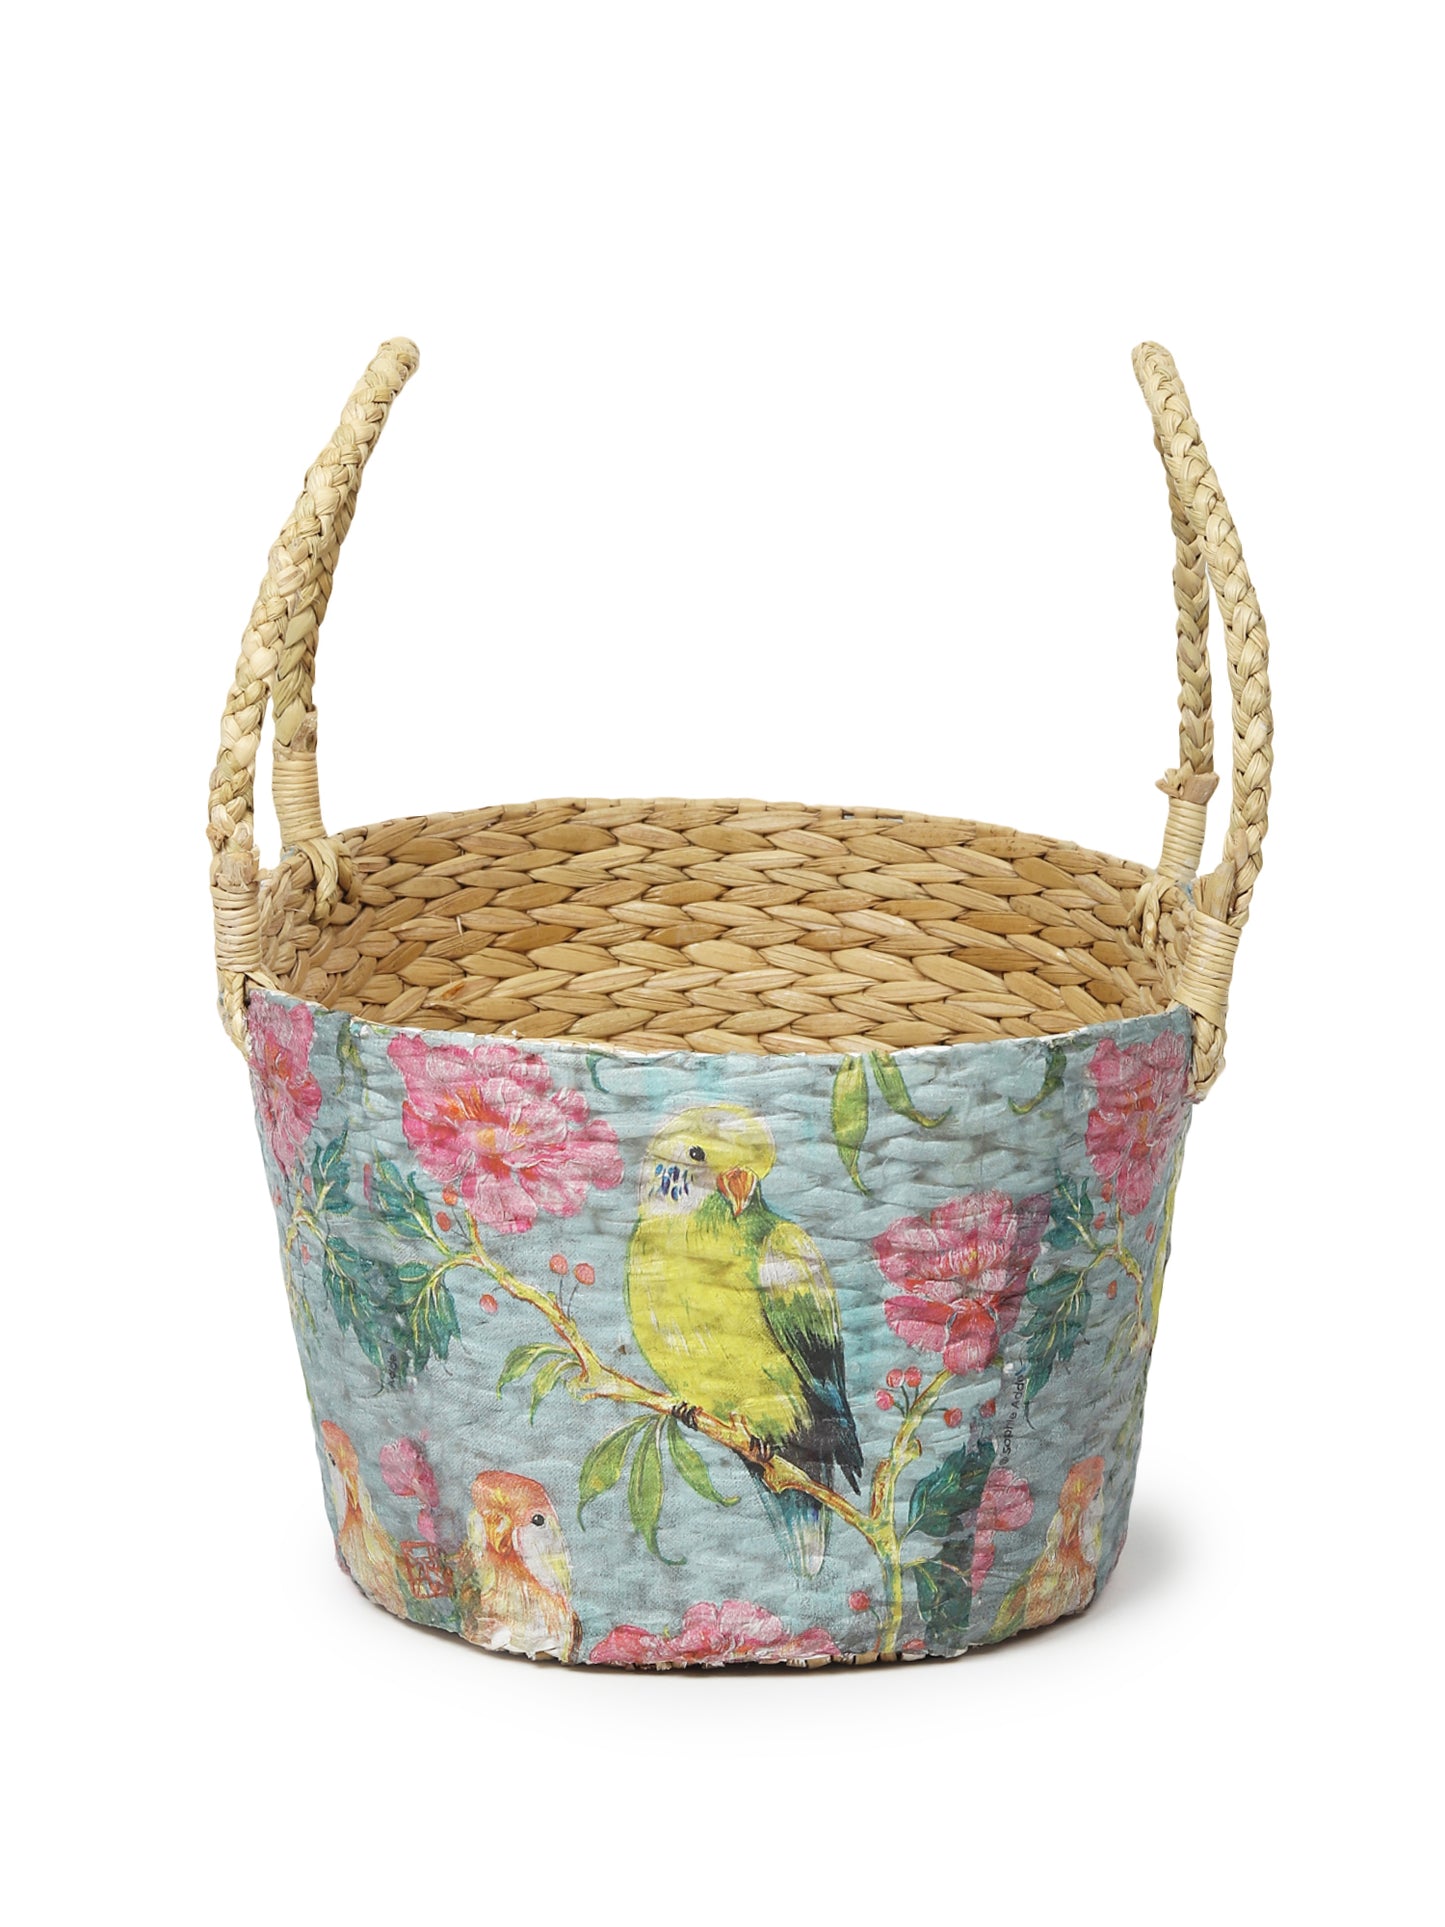 Seagrass Hamper Basket | Gift Hamper Basket